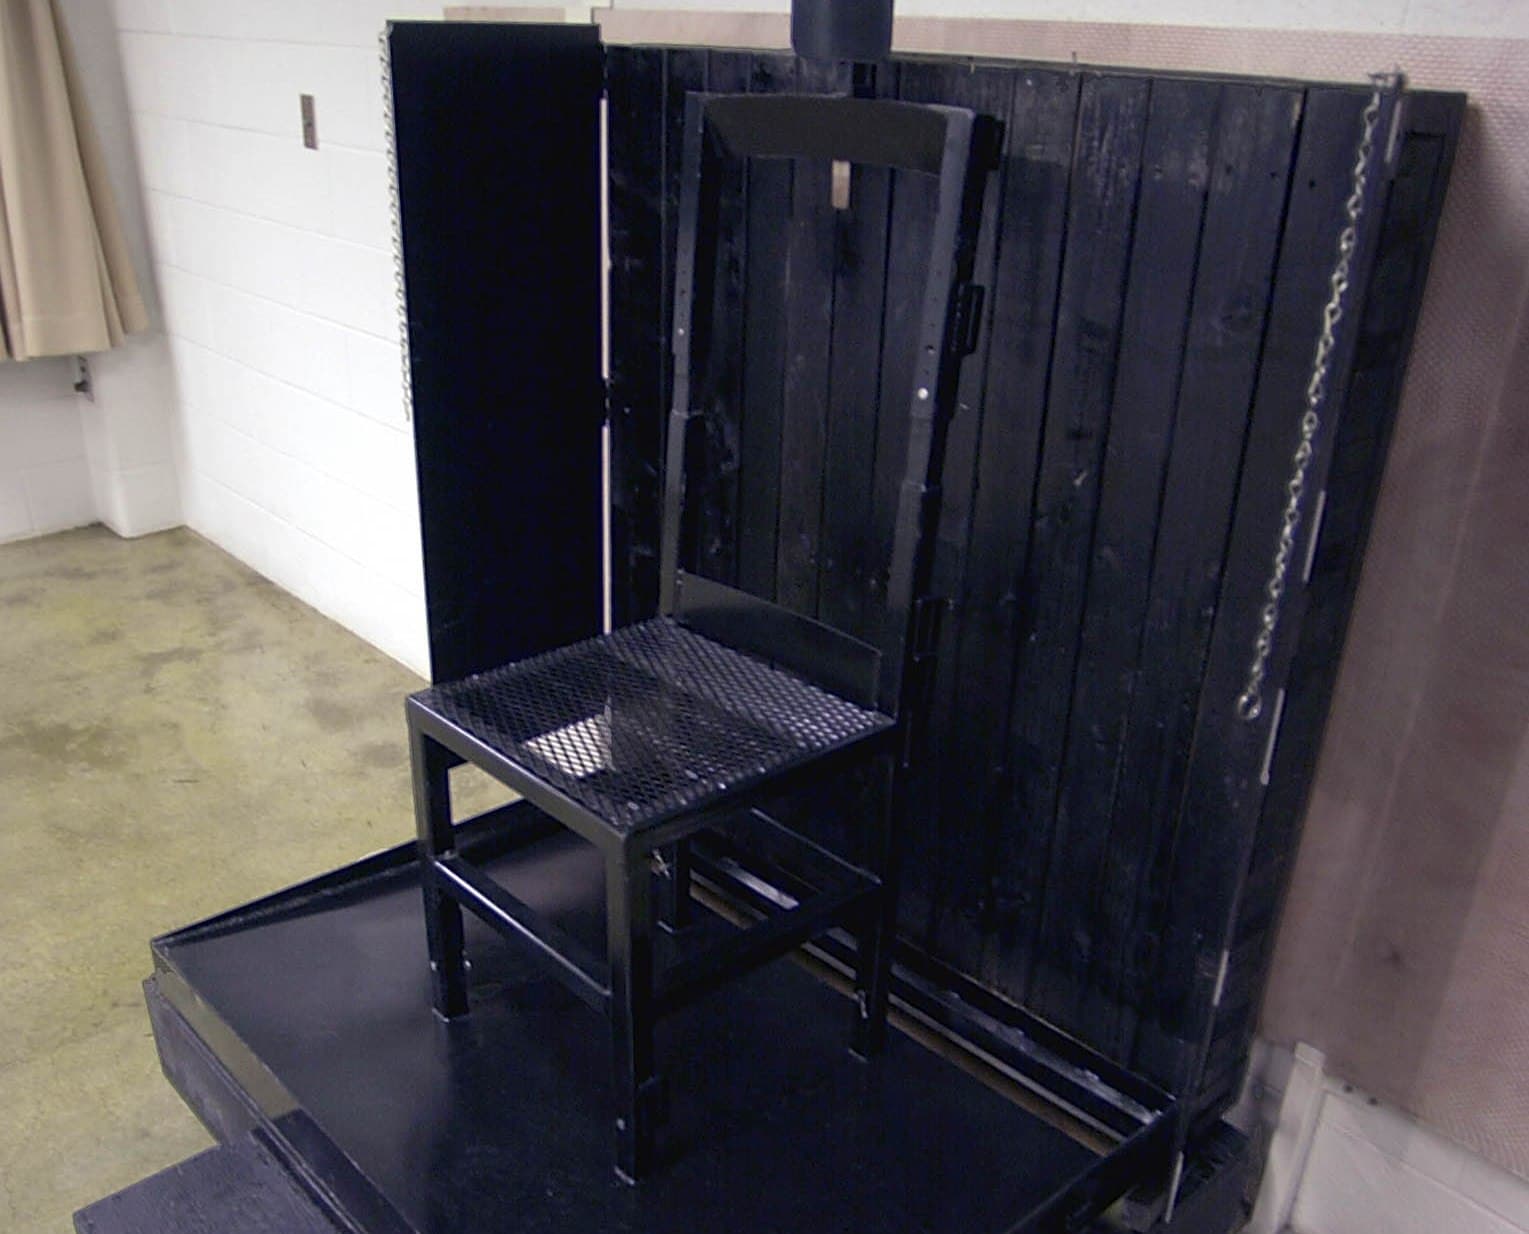 Az amerikai legfelsőbb bíróság elutasította a kezdeményezést a halálbüntetés szövetségi szintű visszaállítására